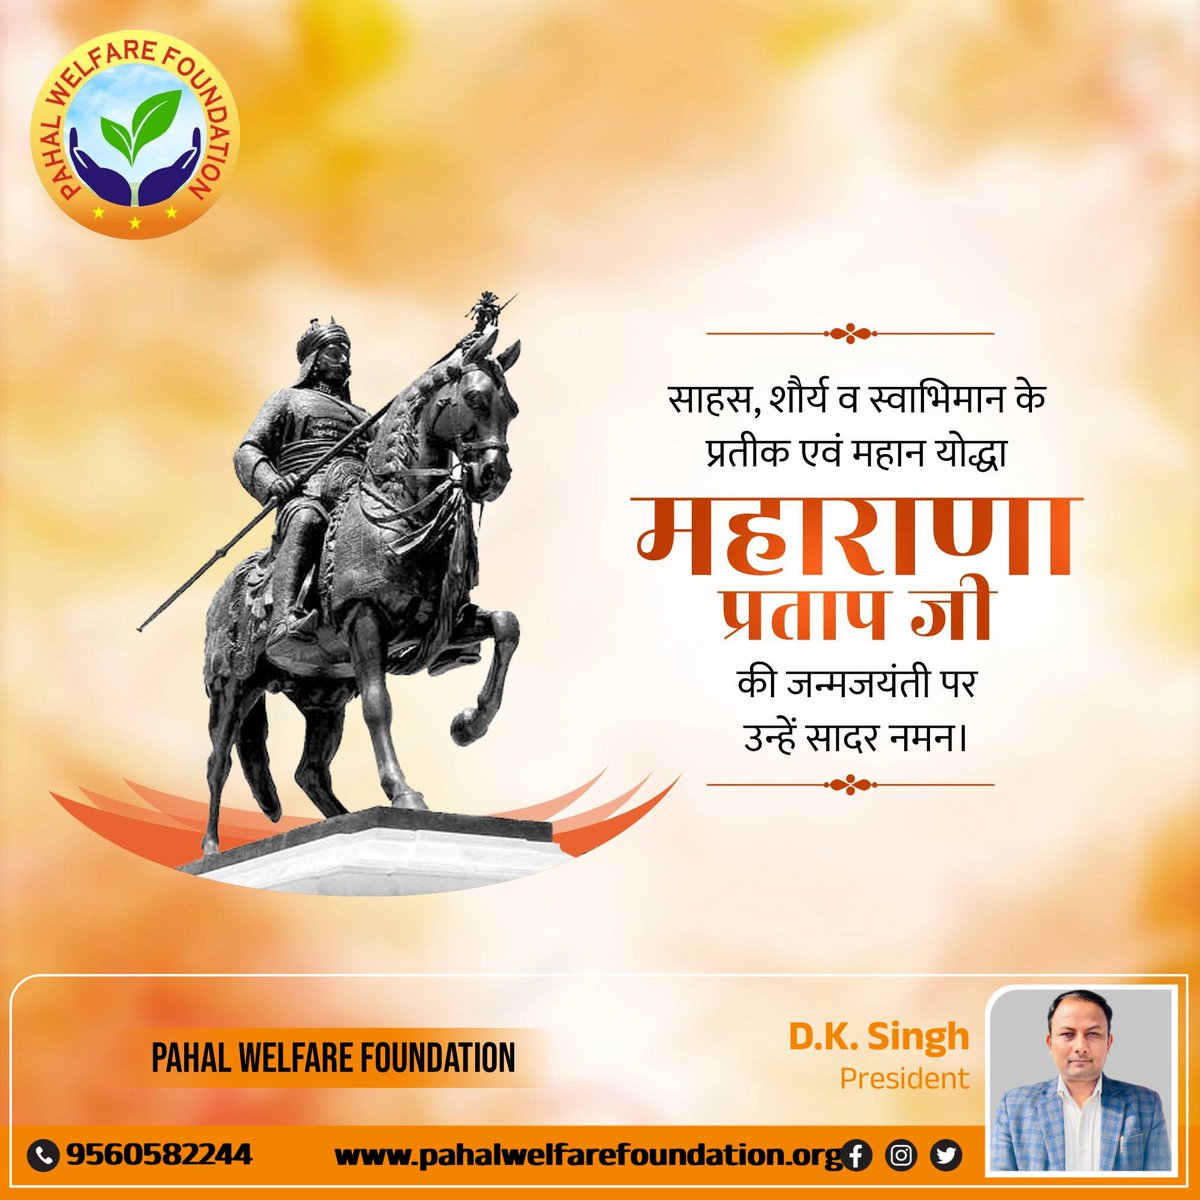 मातृभूमि की रक्षा के लिए अपना सर्वस्व न्योछावर करने वाले, अदम्य साहस और स्वाभिमान के प्रतीक महाराणा प्रताप की जयंती पर कोटि-कोटि नमन। #MaharanaPratap